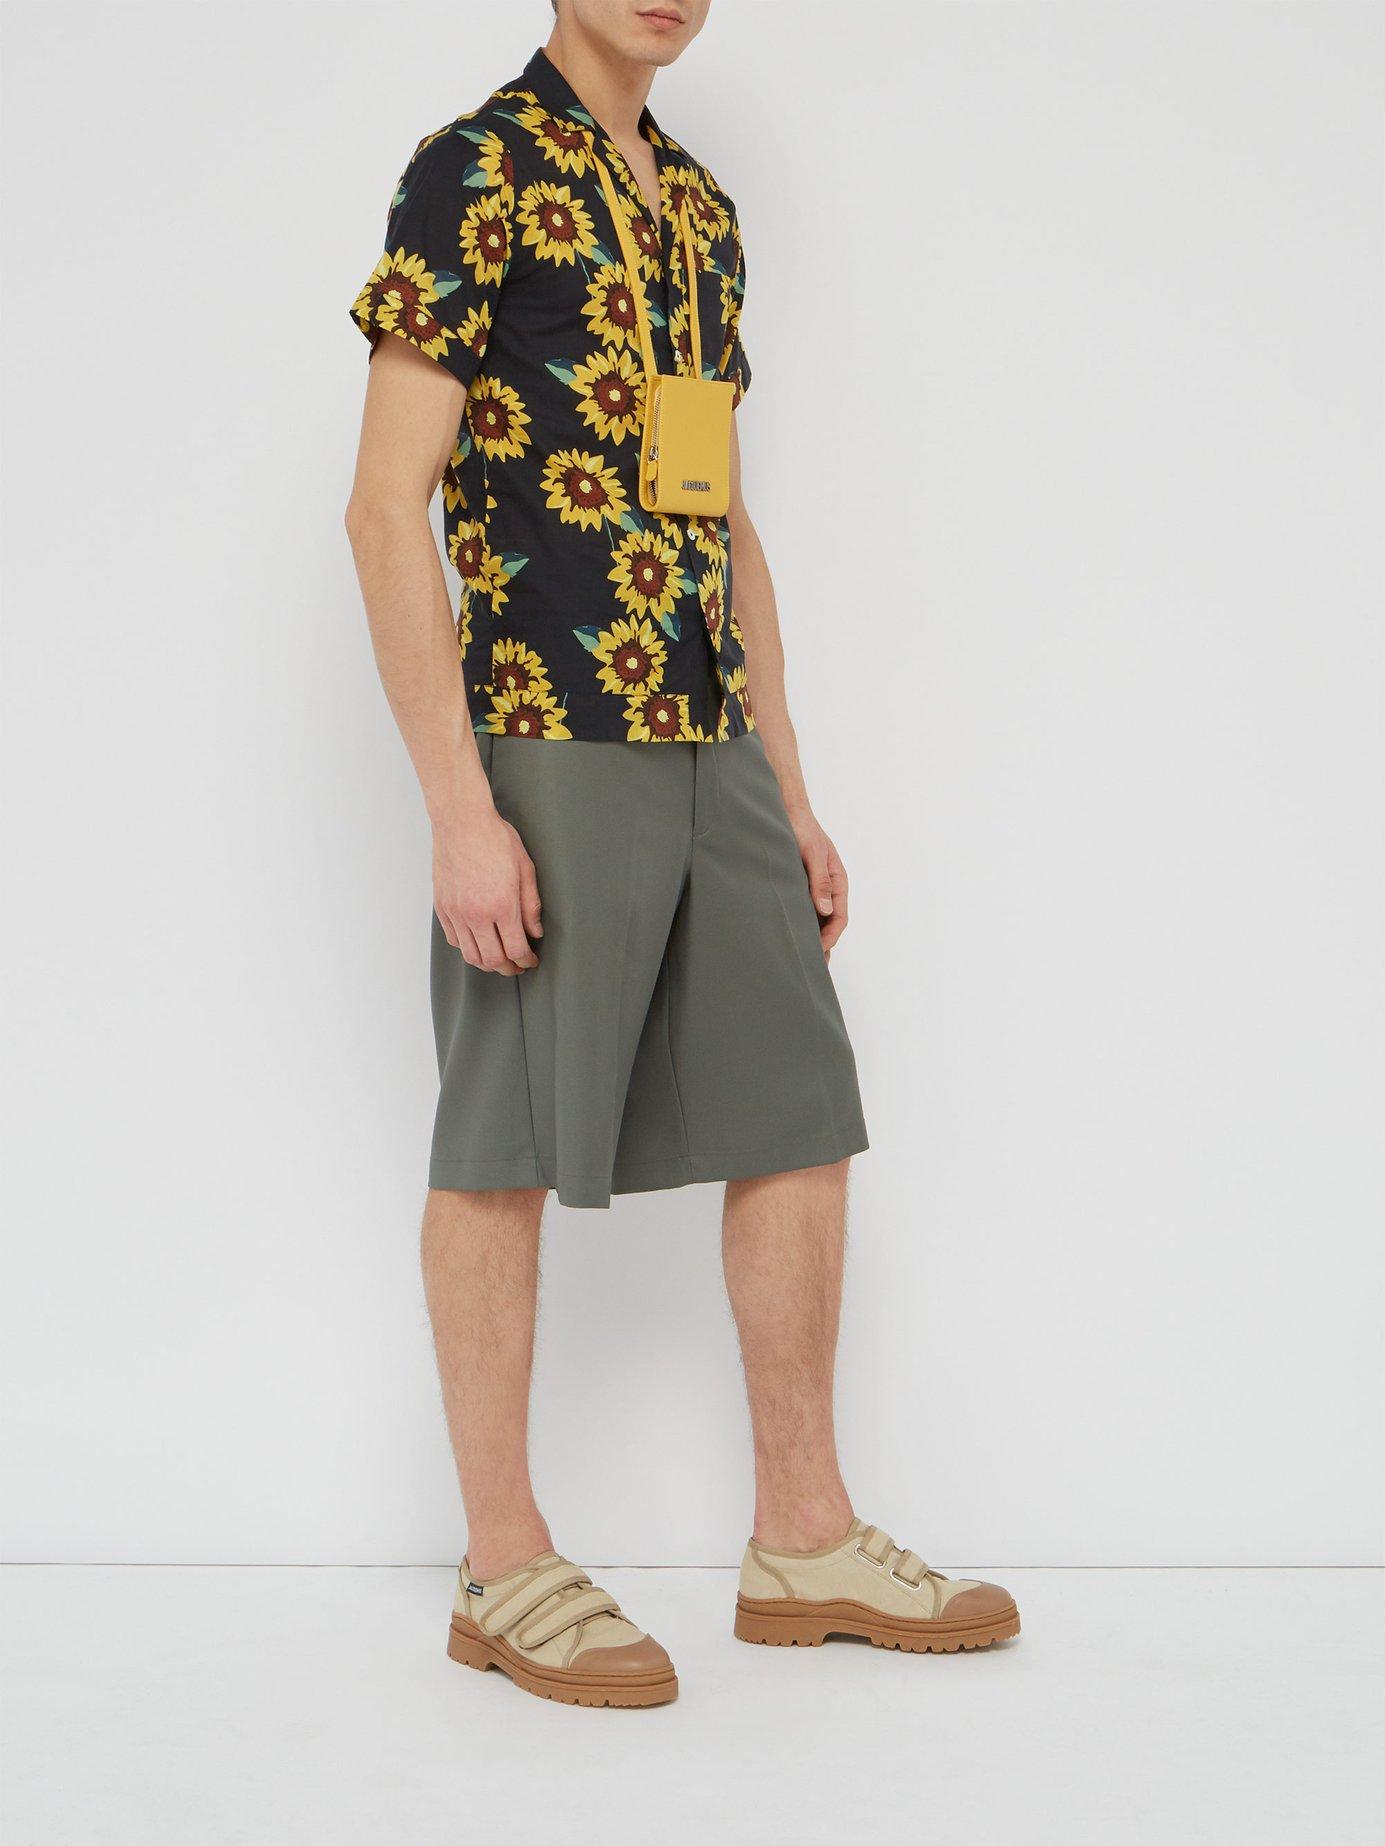 Jacquemus Sunflower Print Short Sleeved Cotton Shirt for Men - Lyst